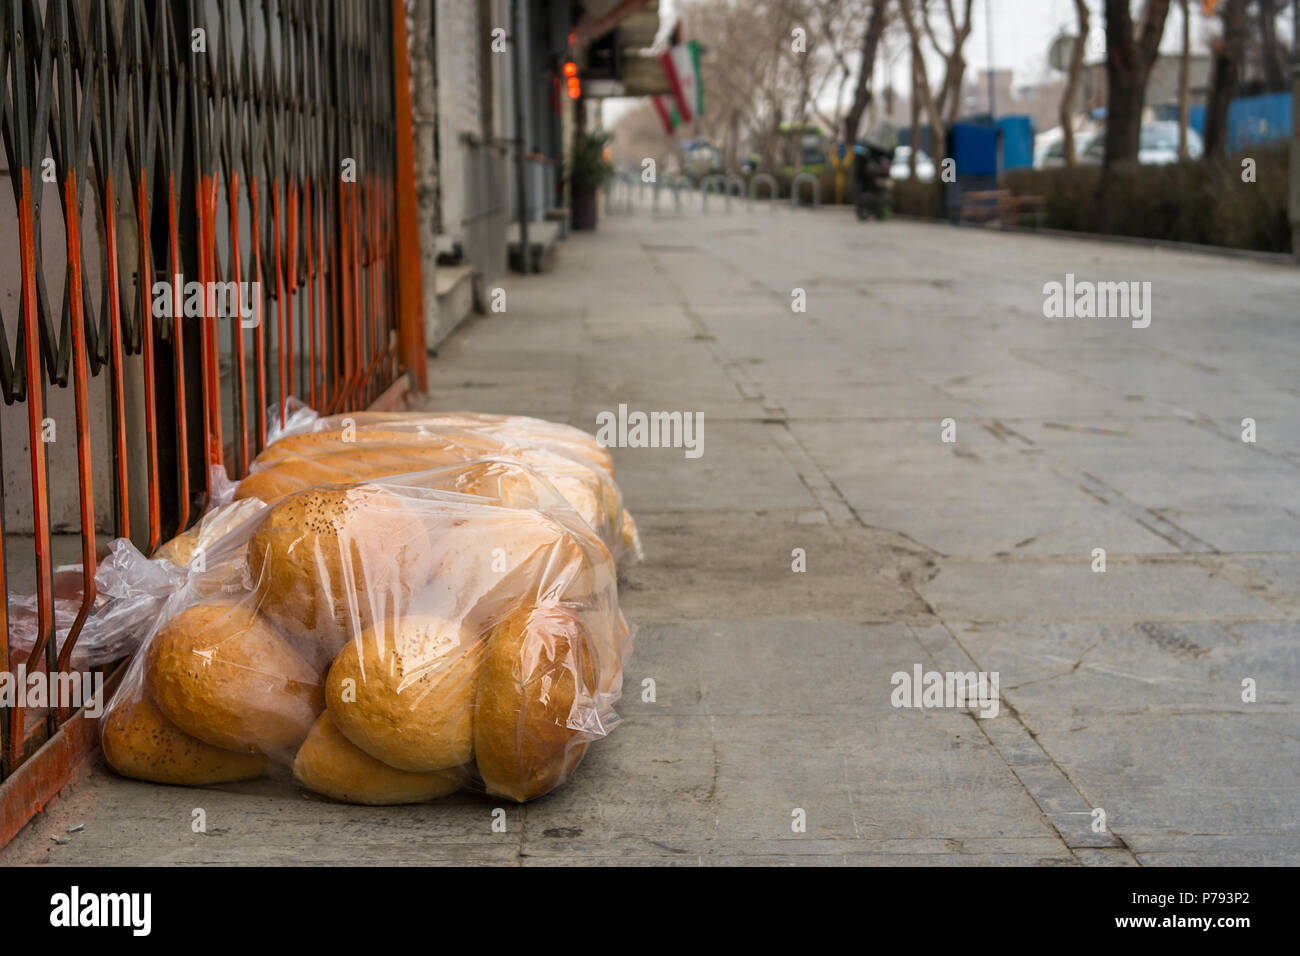 Une livraison de pains fraîchement cuits dans des sacs de plastique mise sur le trottoir à l'extérieur d'une boutique d'attente avant d'ouvrir. Banque D'Images